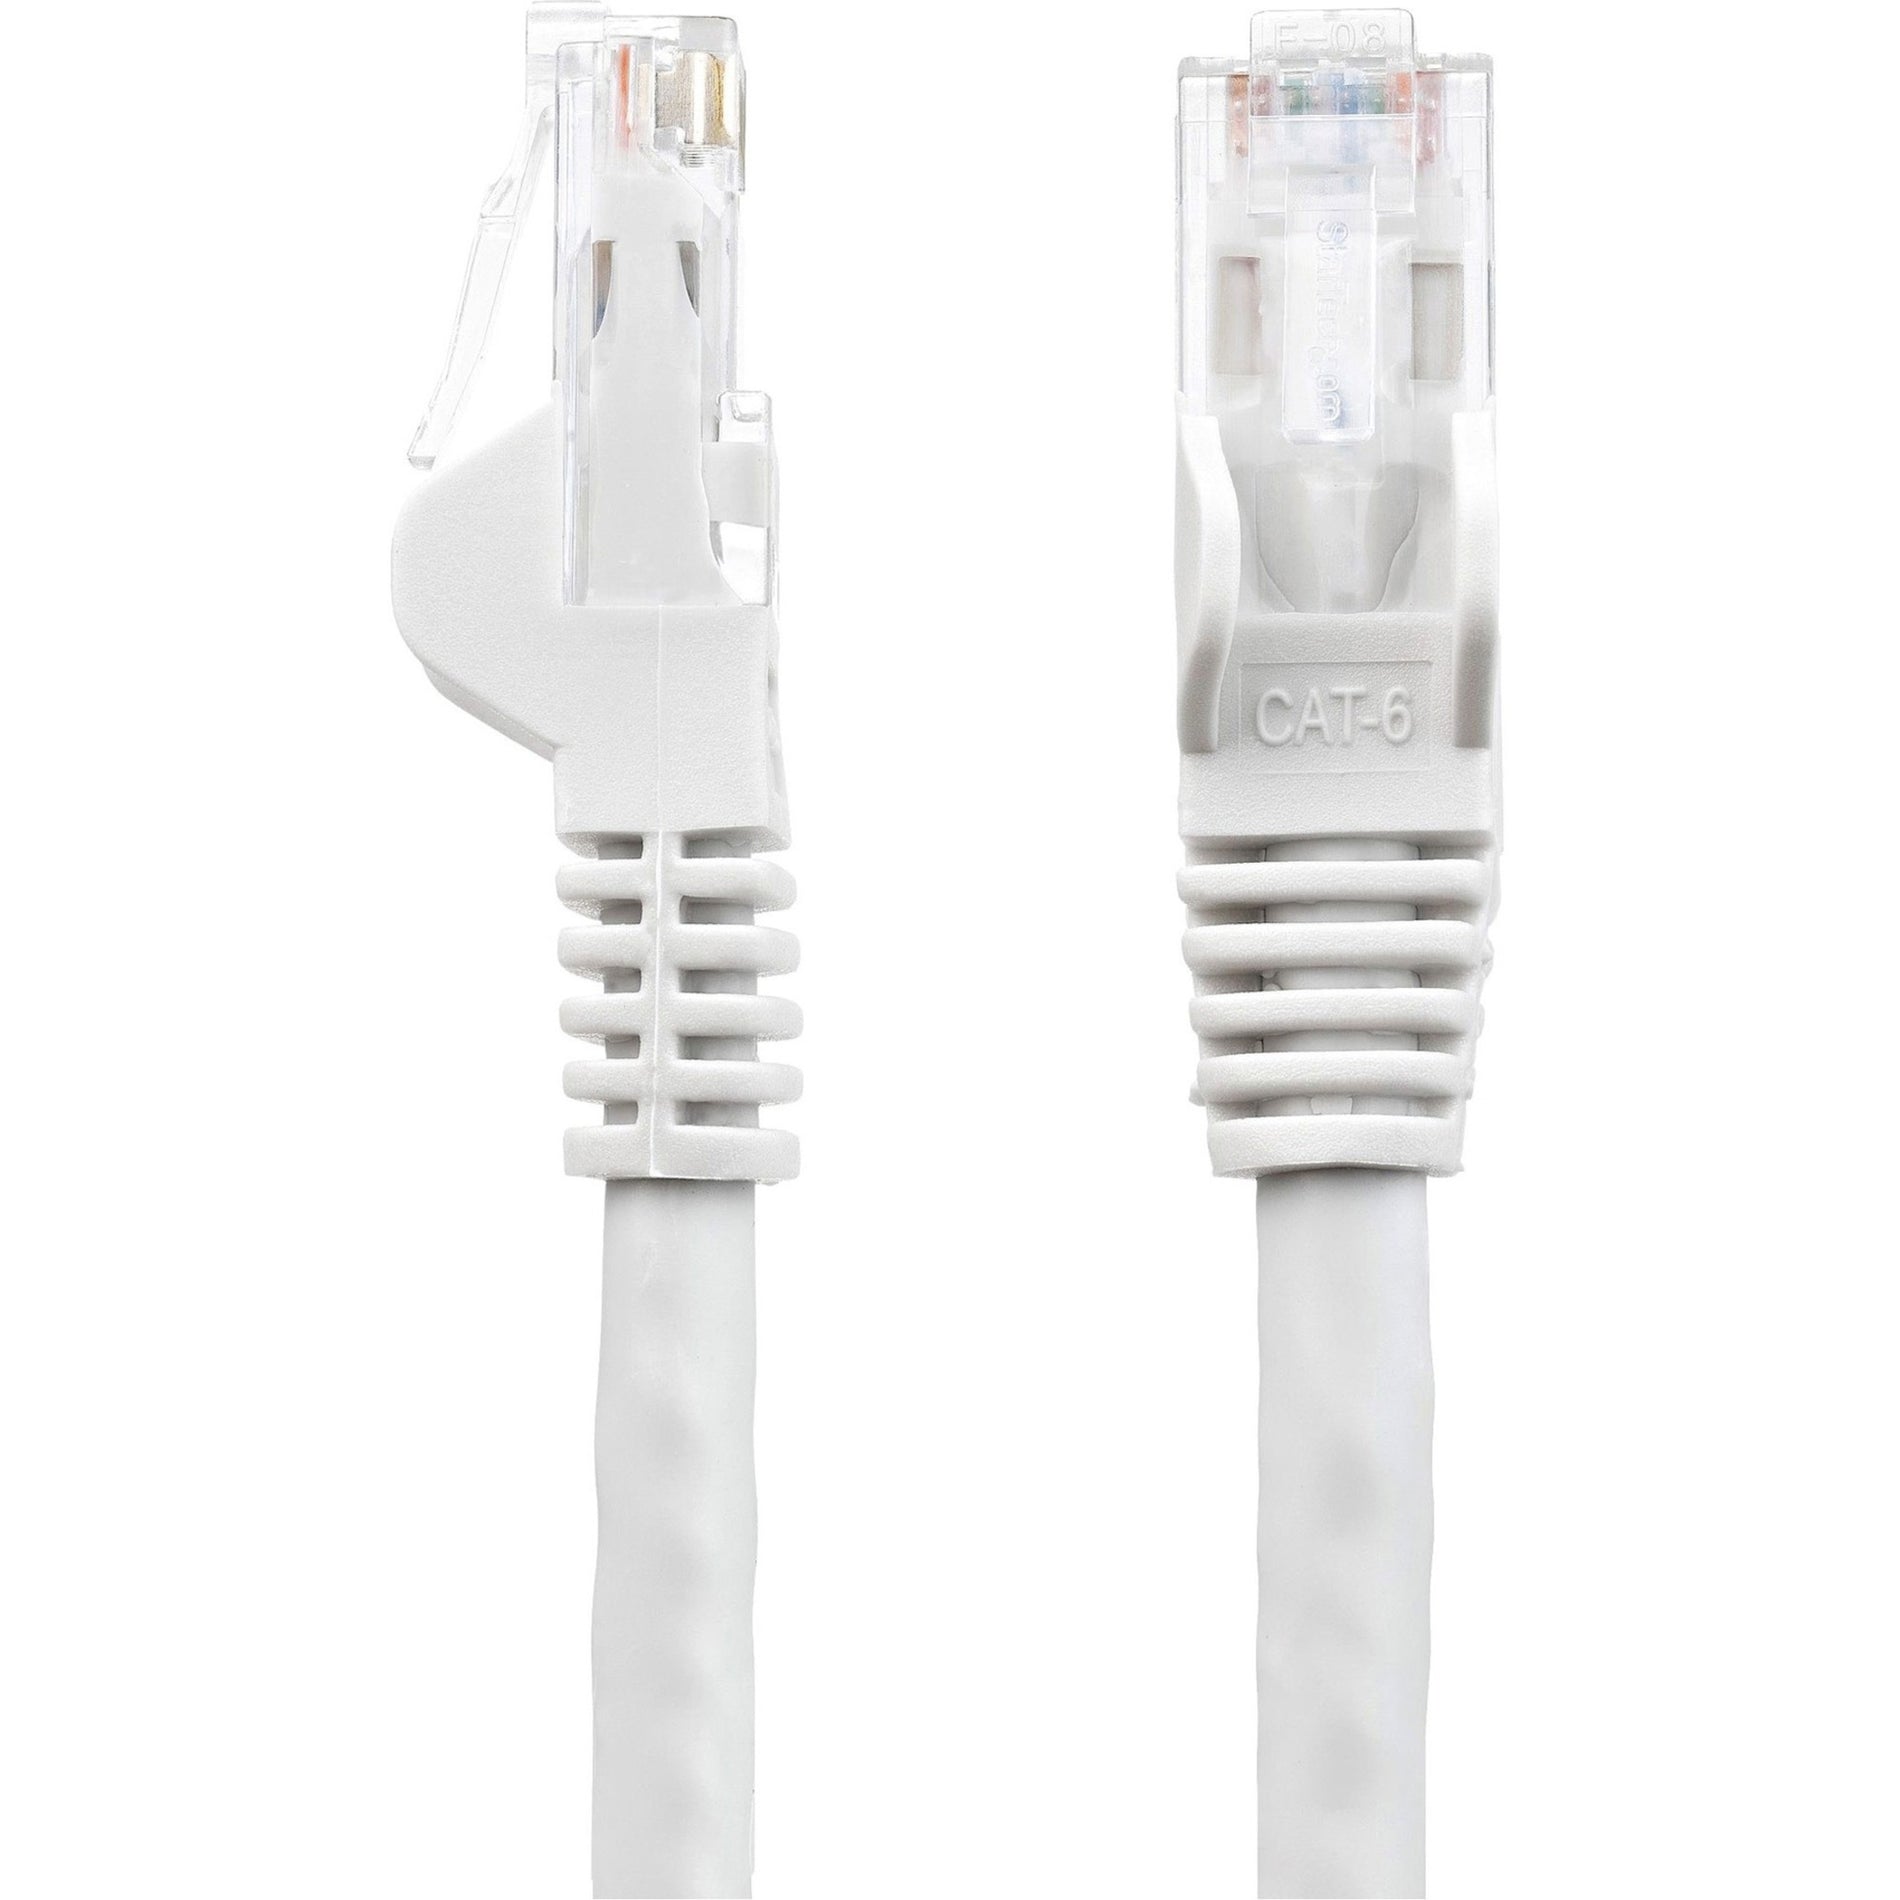 Marca: StarTech.com Cable de parche Cat6 N6PATCH30WH de 30 pies Cable Ethernet blanco Conectores RJ45 sin enganches